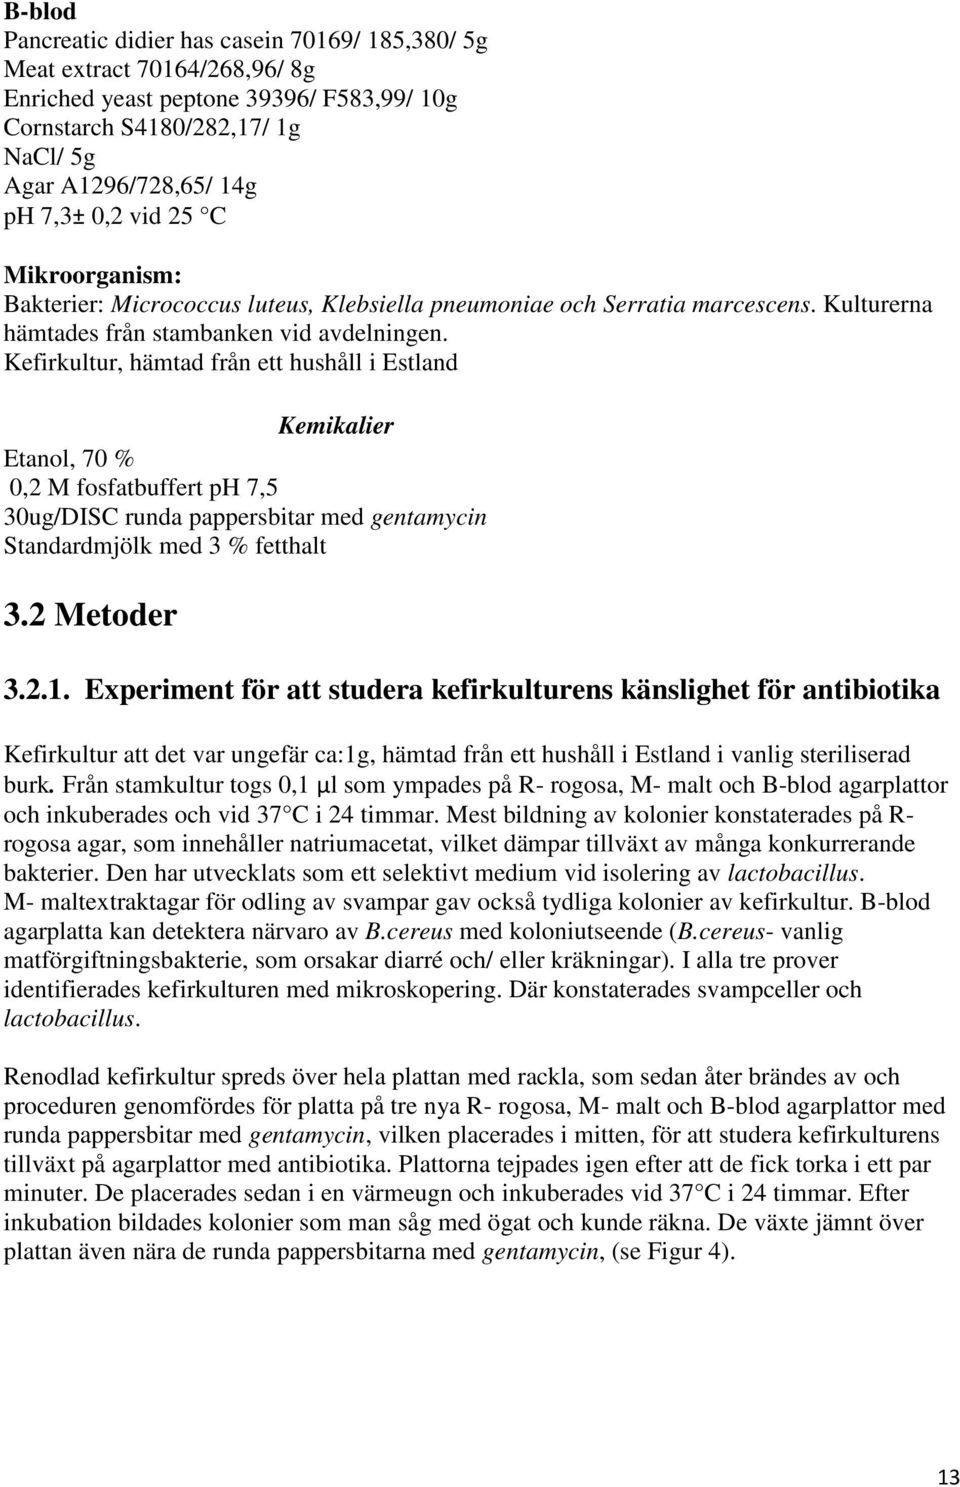 Kefirkultur, hämtad från ett hushåll i Estland Kemikalier Etanol, 70 % 0,2 M fosfatbuffert ph 7,5 30ug/DISC runda pappersbitar med gentamycin Standardmjölk med 3 % fetthalt 3.2 Metoder 3.2.1.